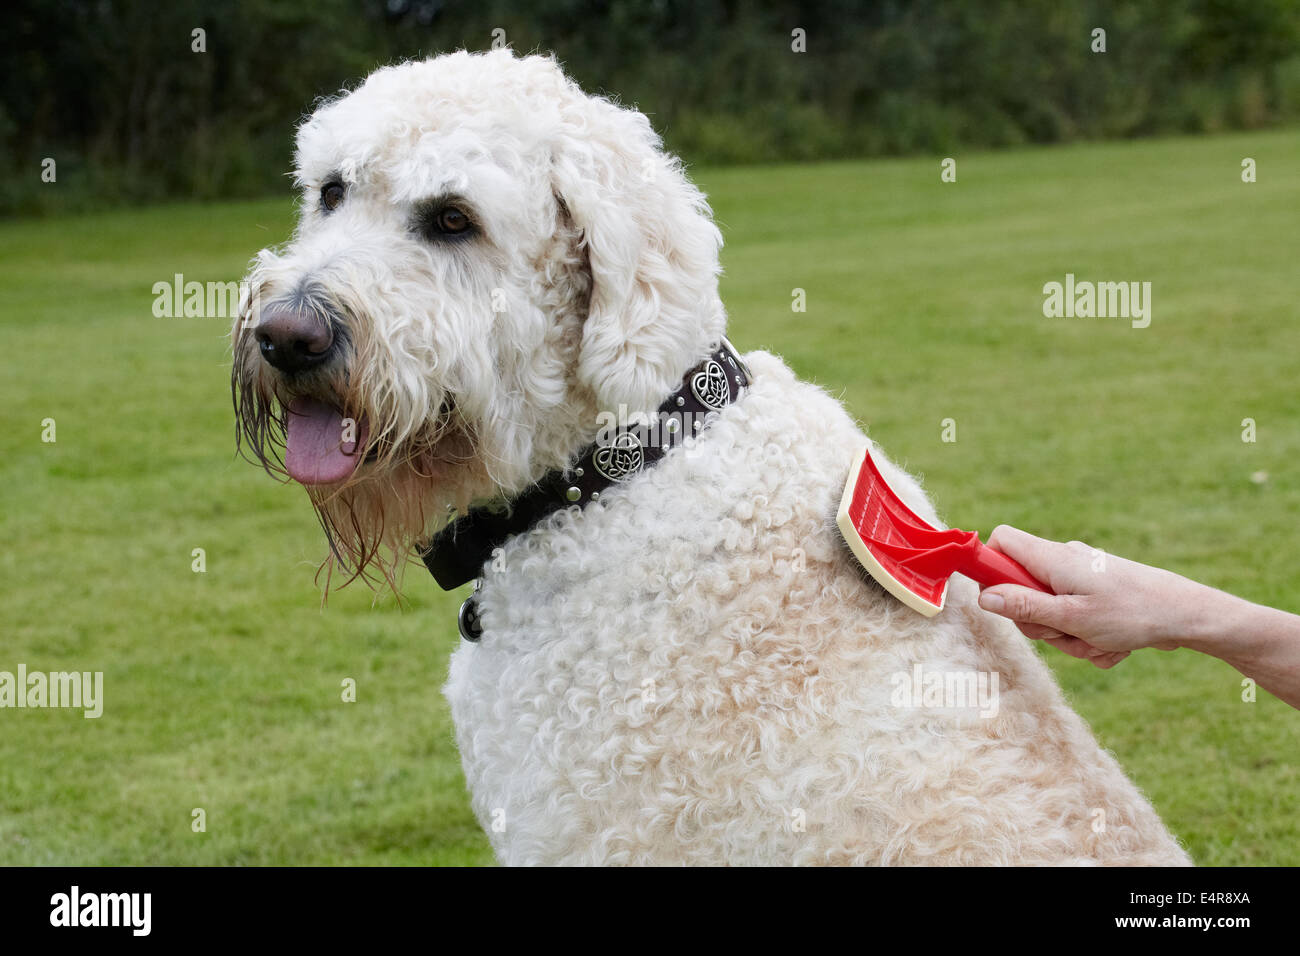 Dog grooming, brushing coat Stock Photo